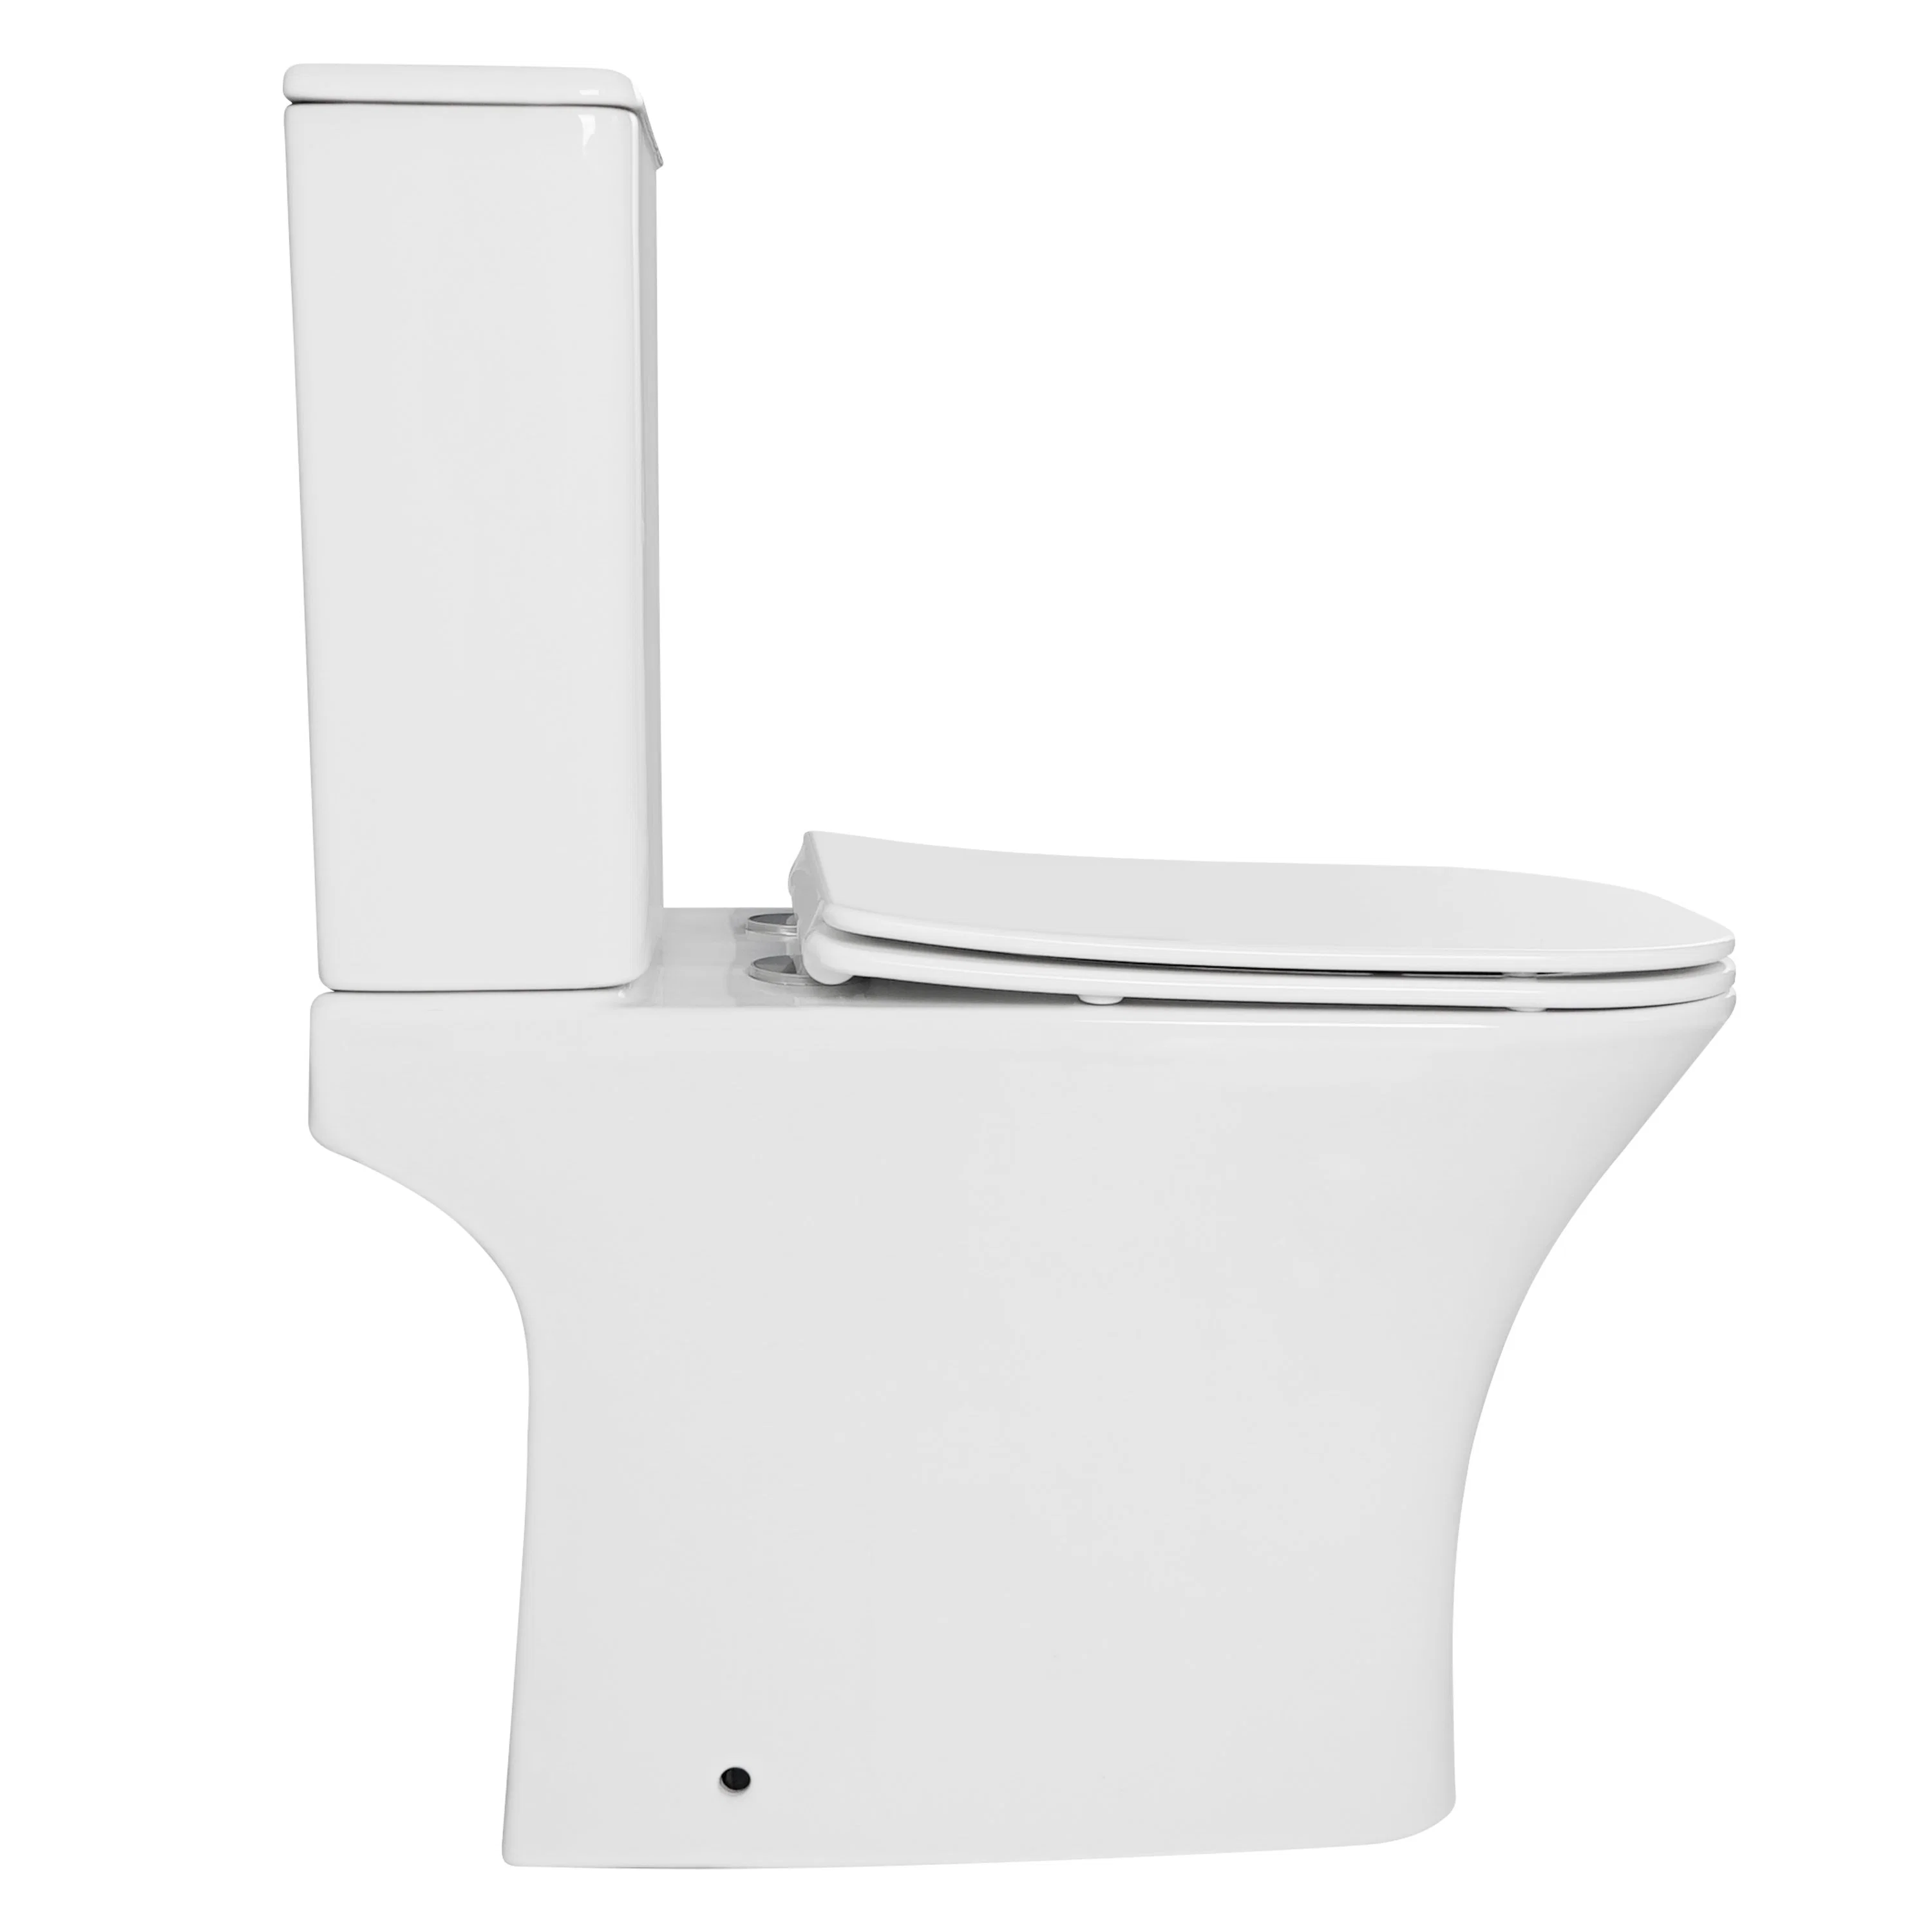 Keramik Zweiteilige Wc Quadratische Form Randlose Sanitärkeramik Keramik WC WC WC zweiteilige P Trap Toilette